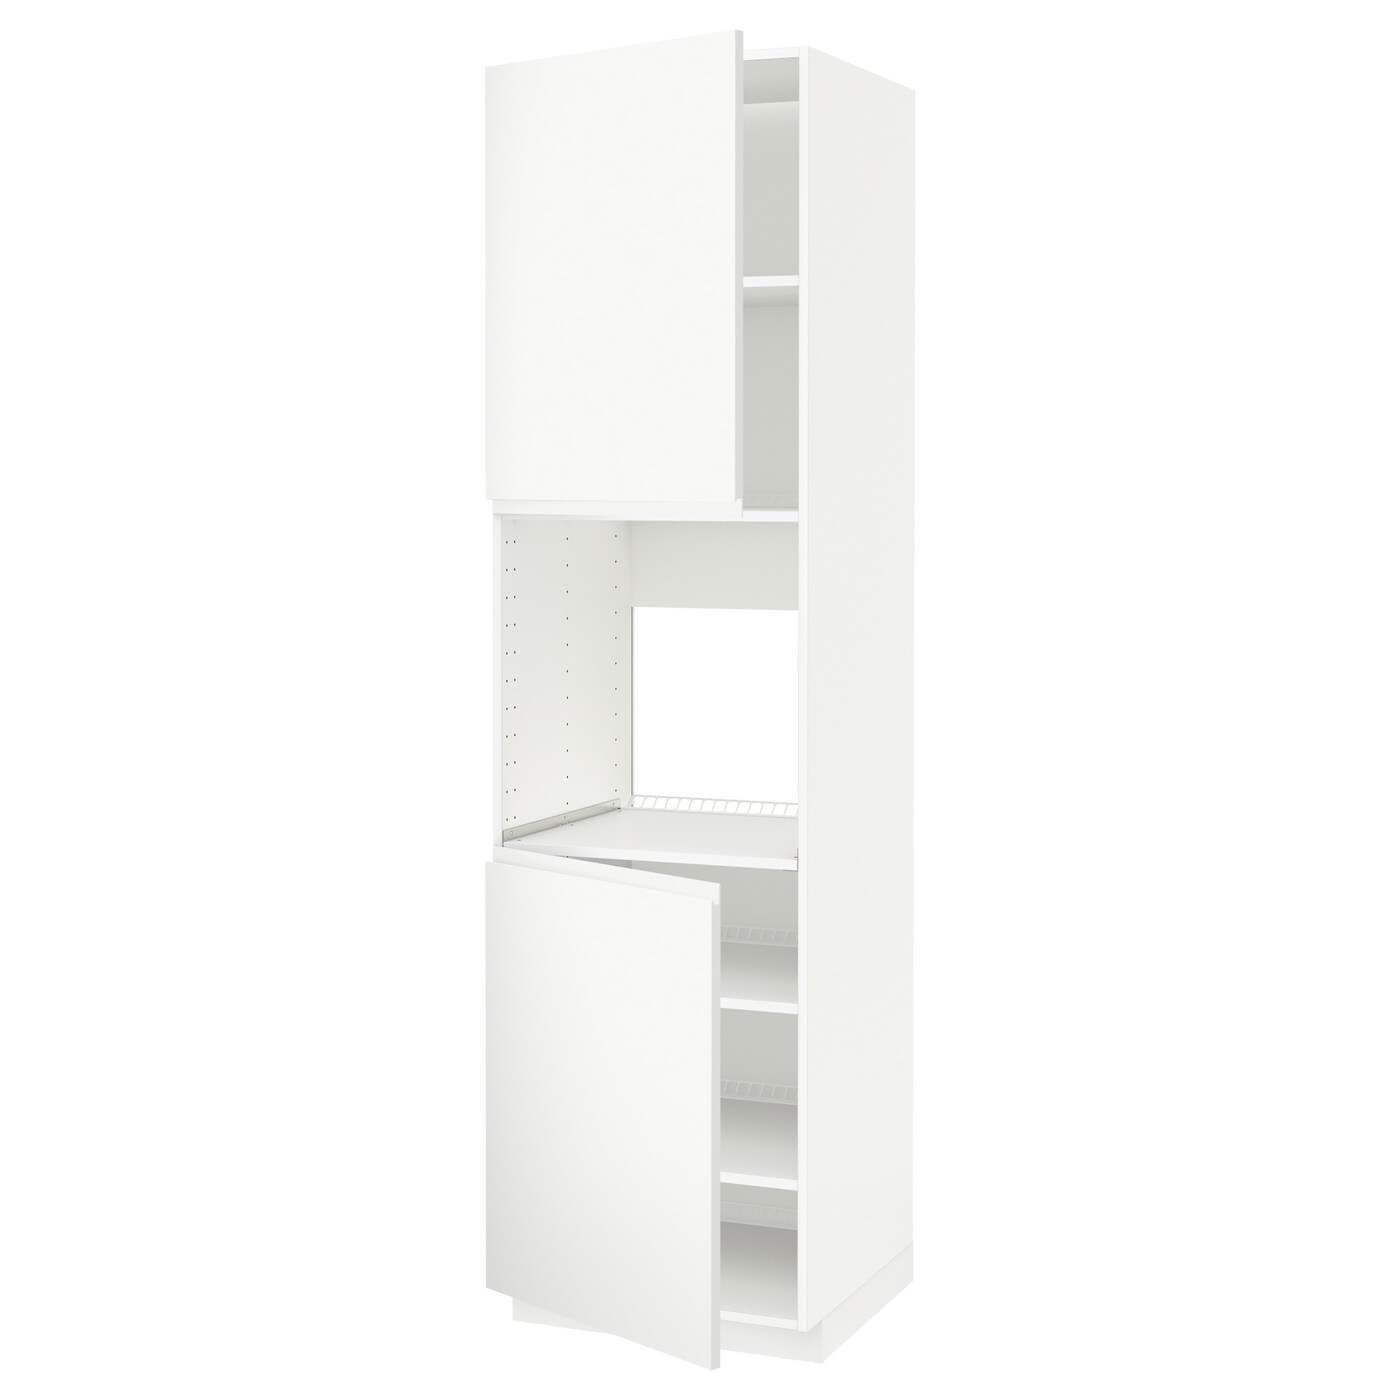 Модульный шкаф - METOD IKEA/ МЕТОД ИКЕА, 228х60 см, белый